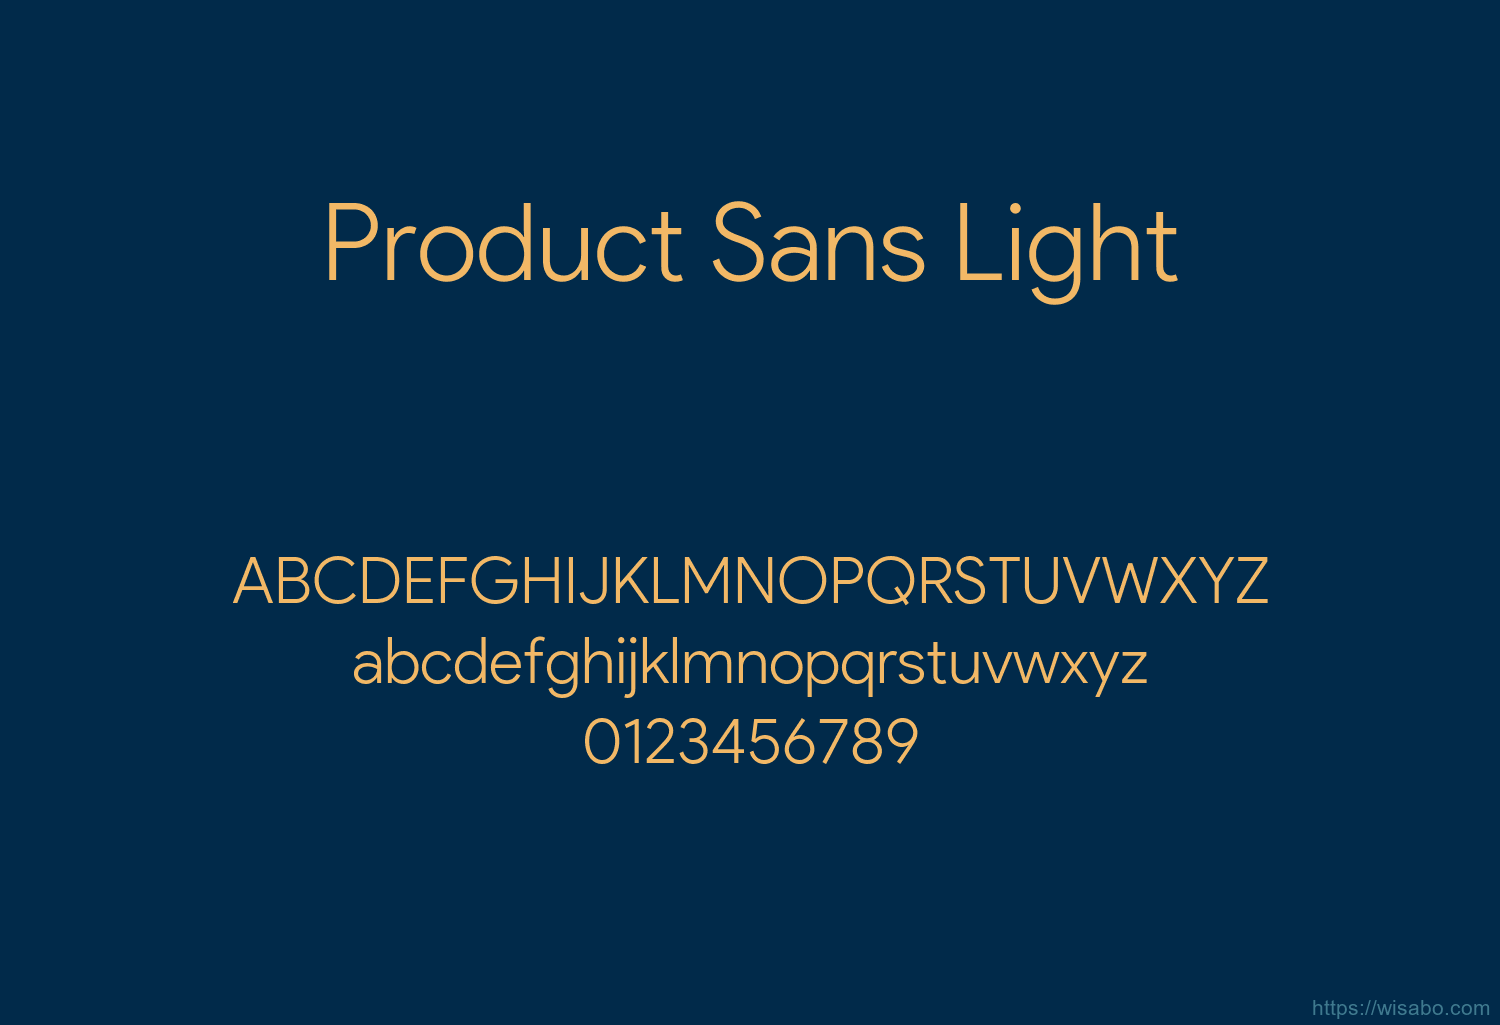 Product Sans Light